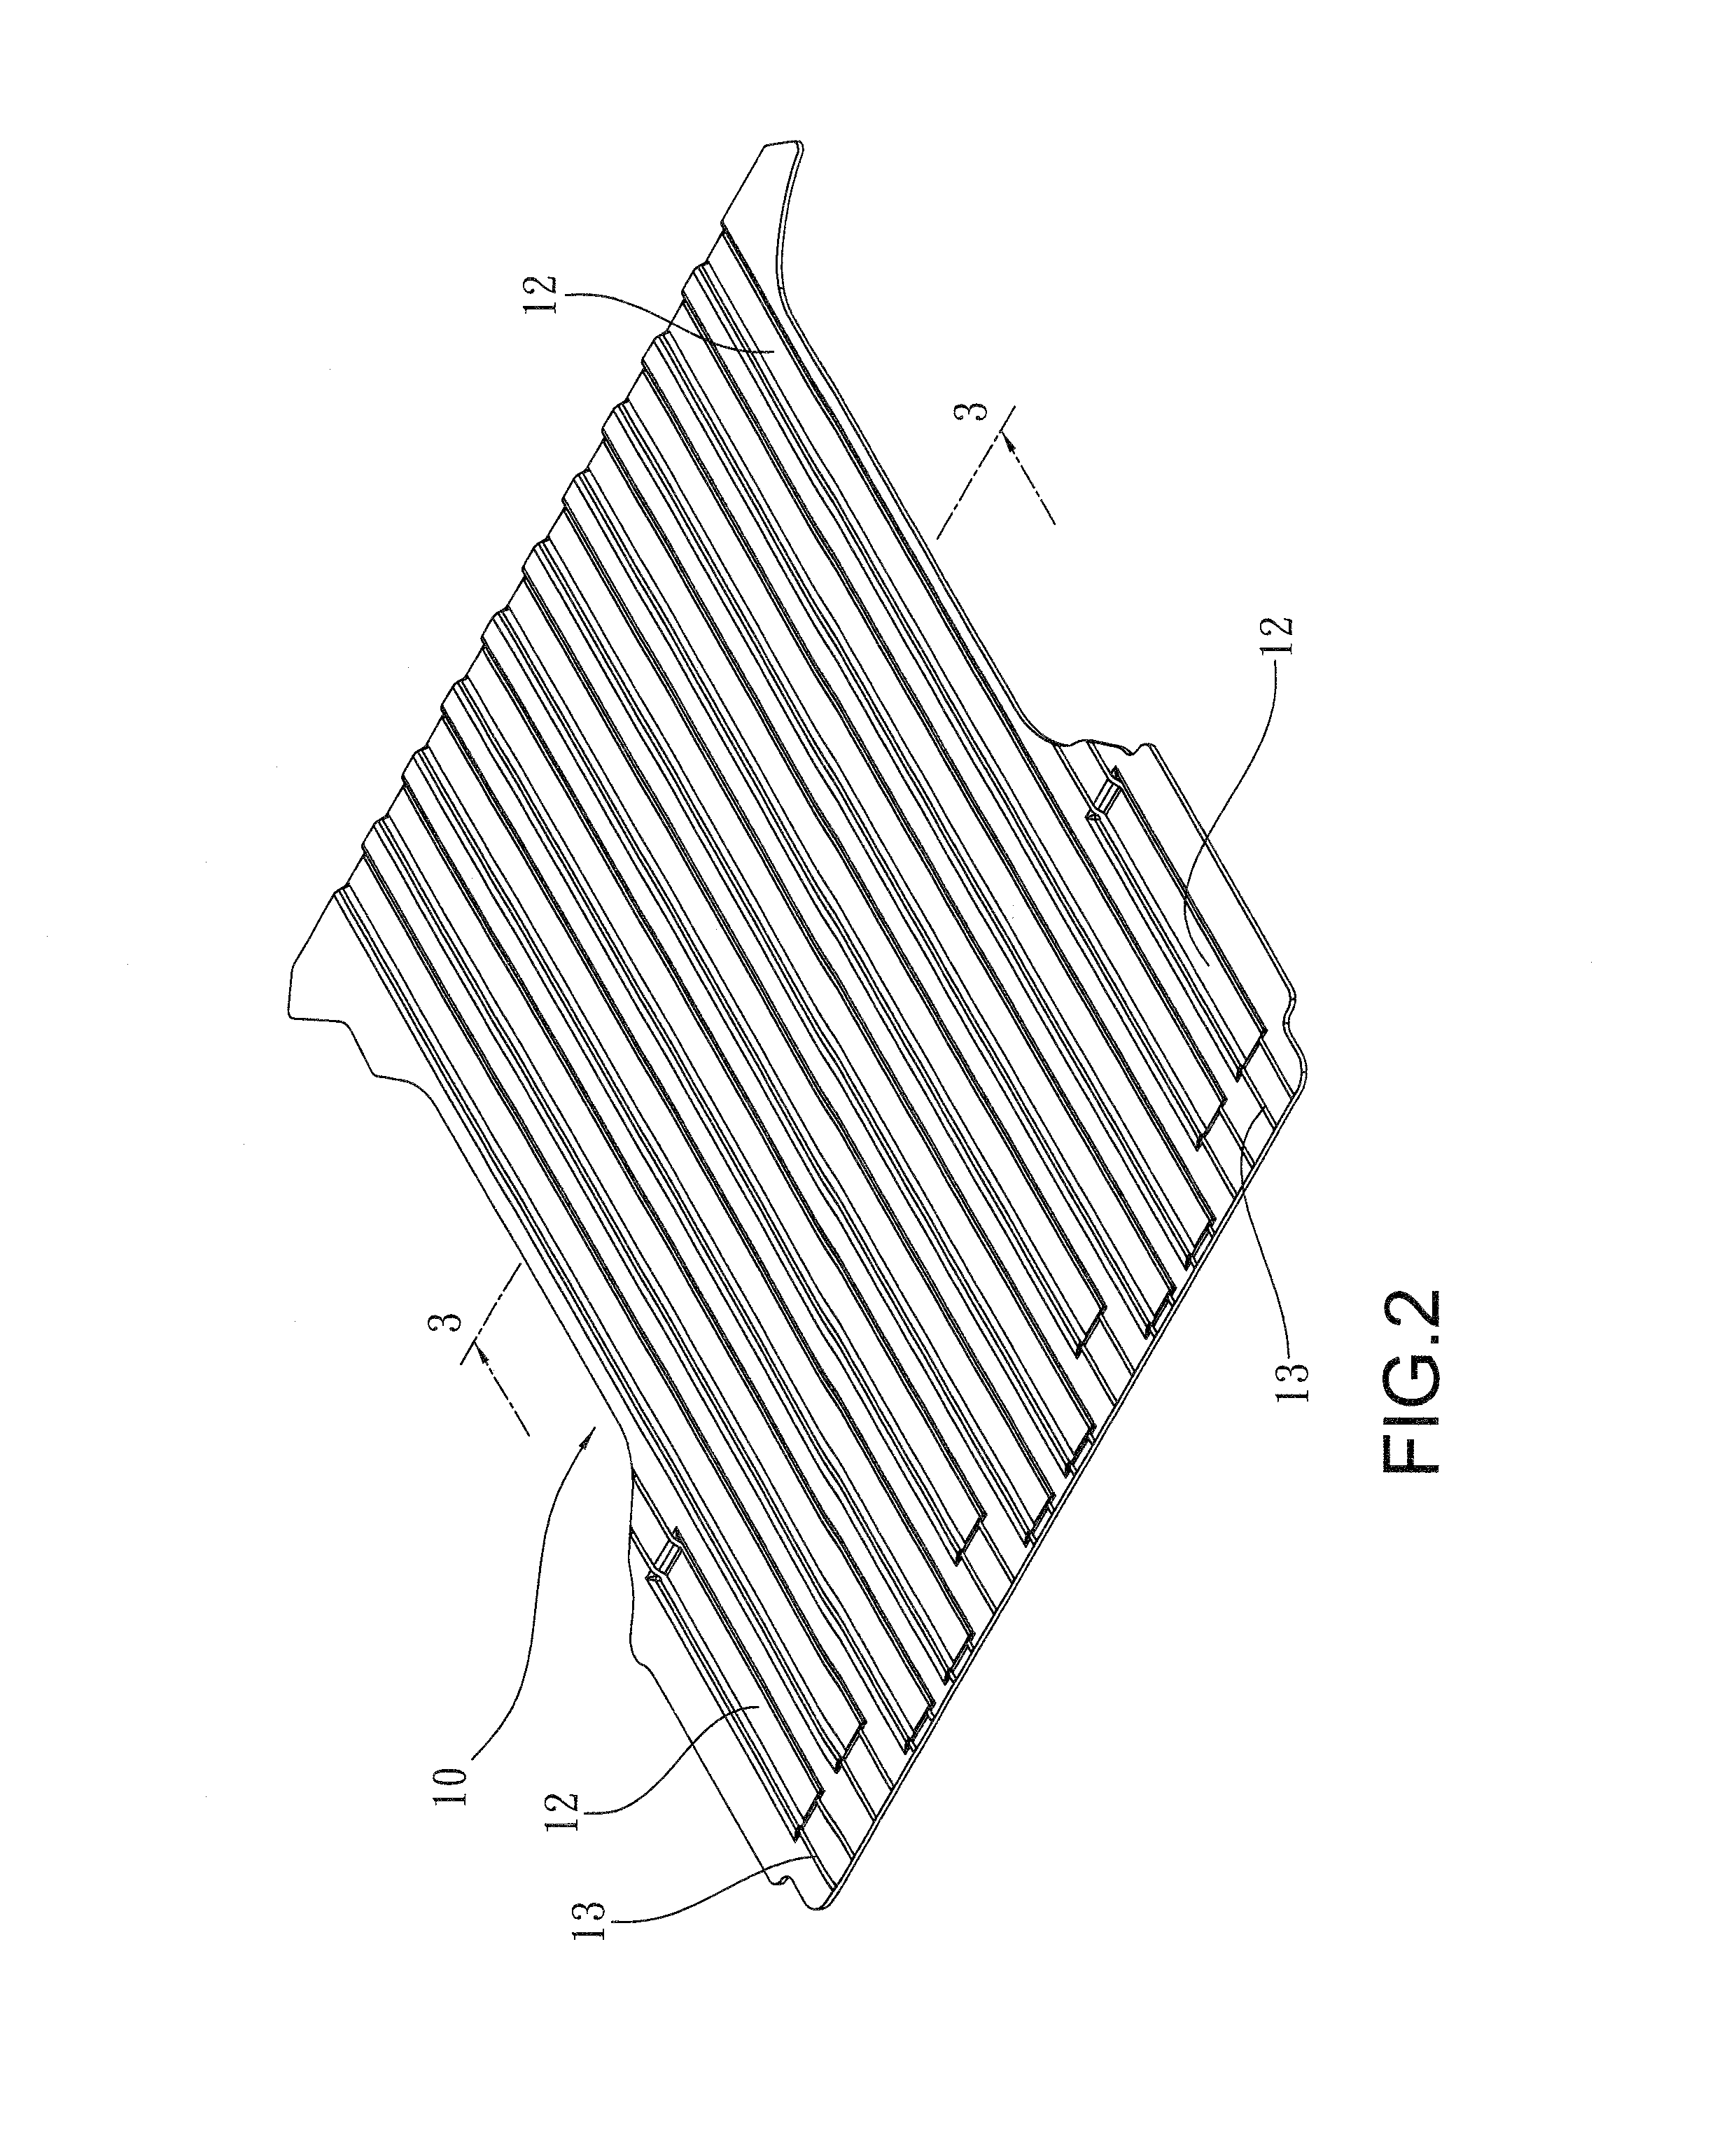 Structure of floor mat of cargo bed of truck